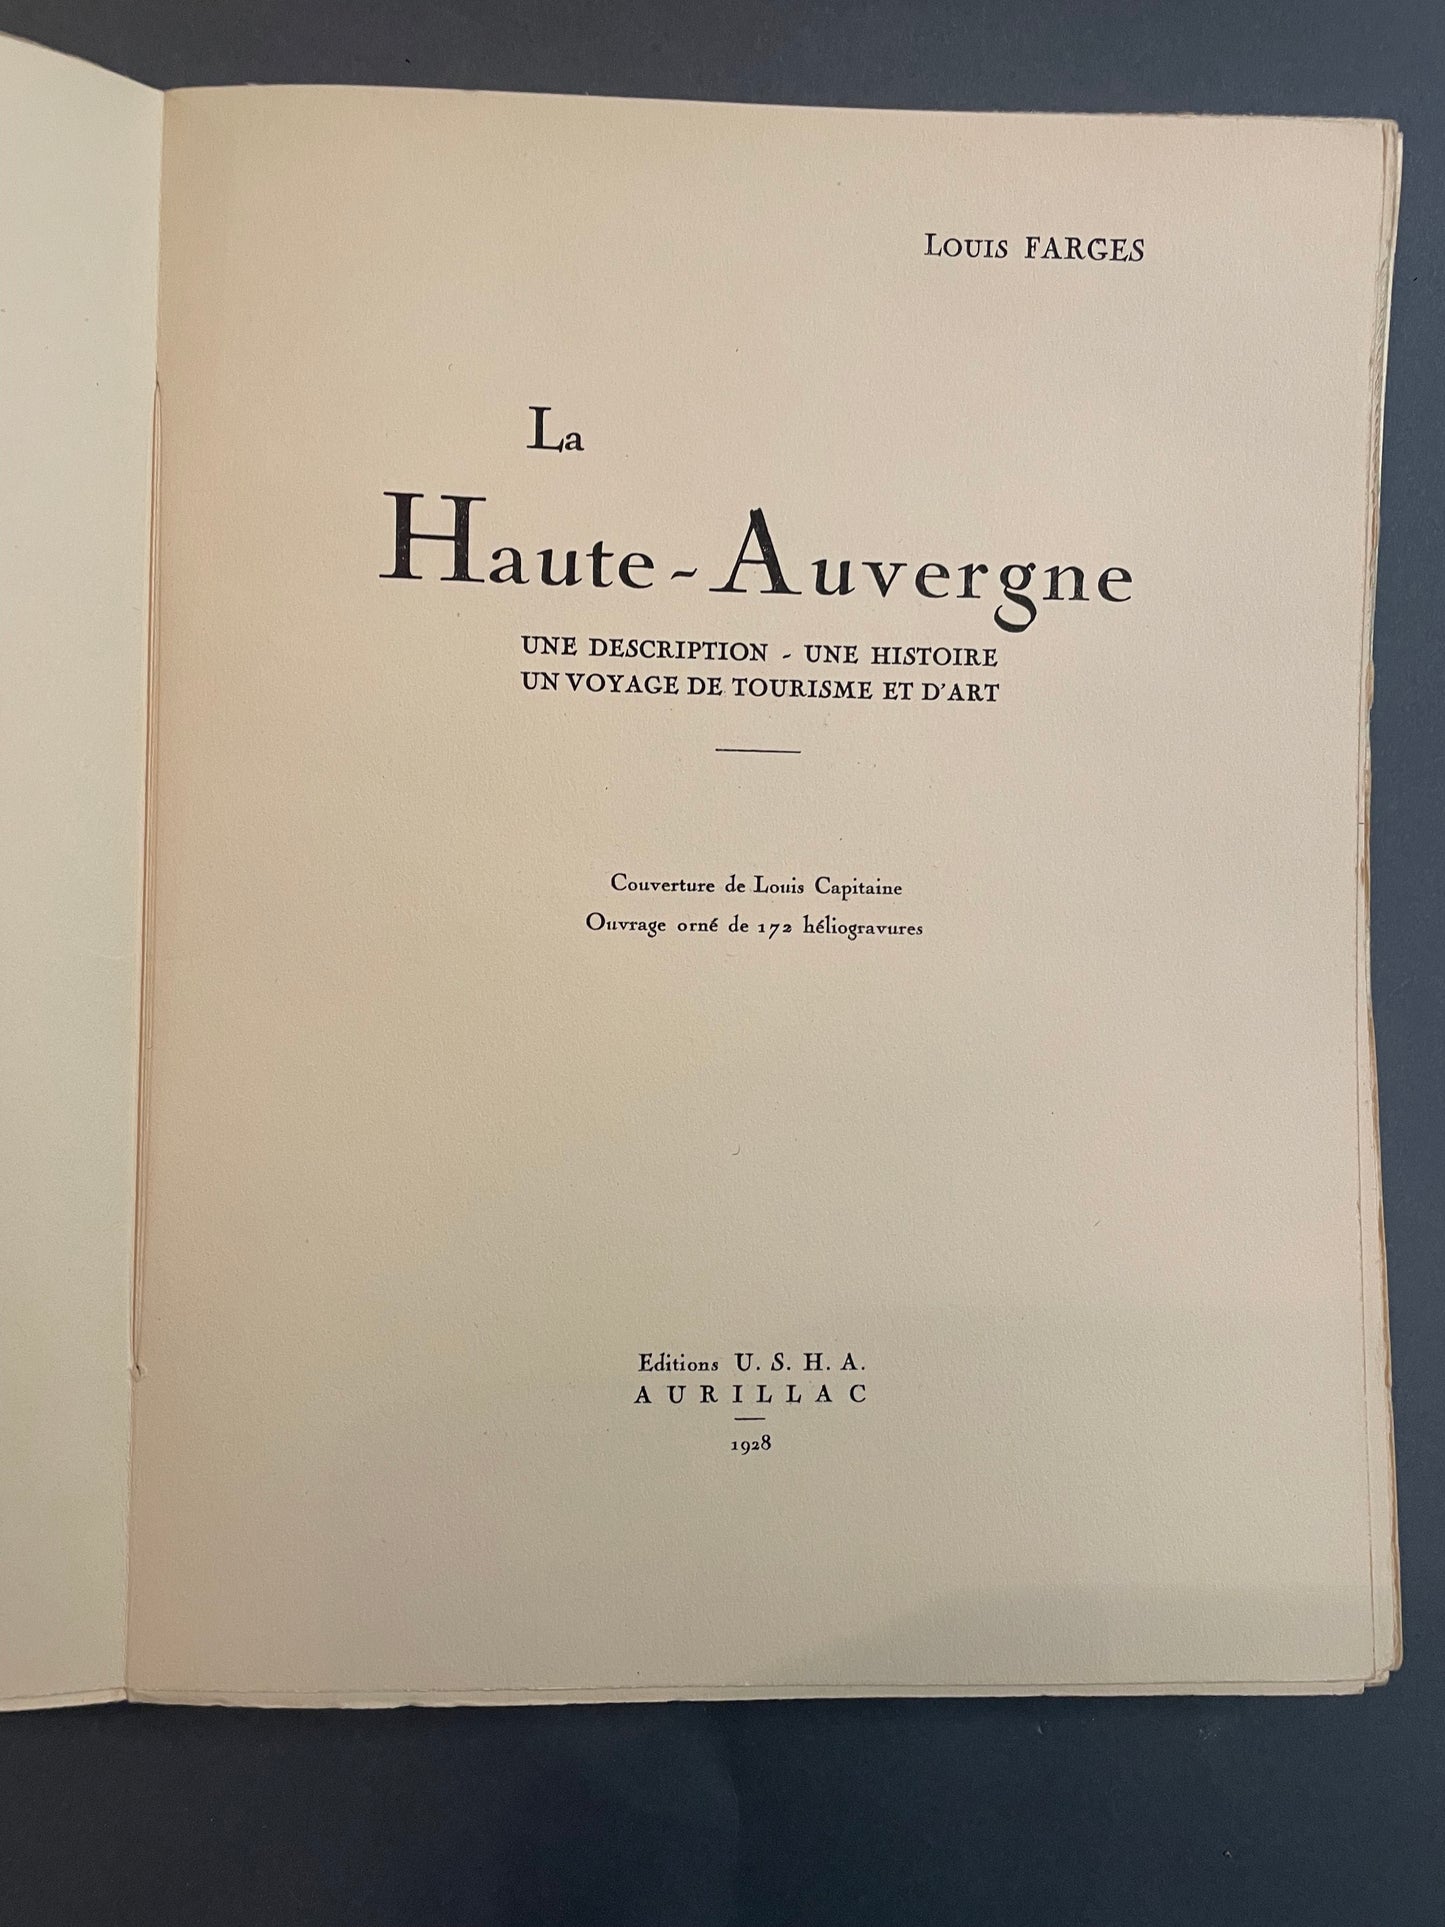 La Haute Auvergne, Farges Louis US H A Aurillac 1928